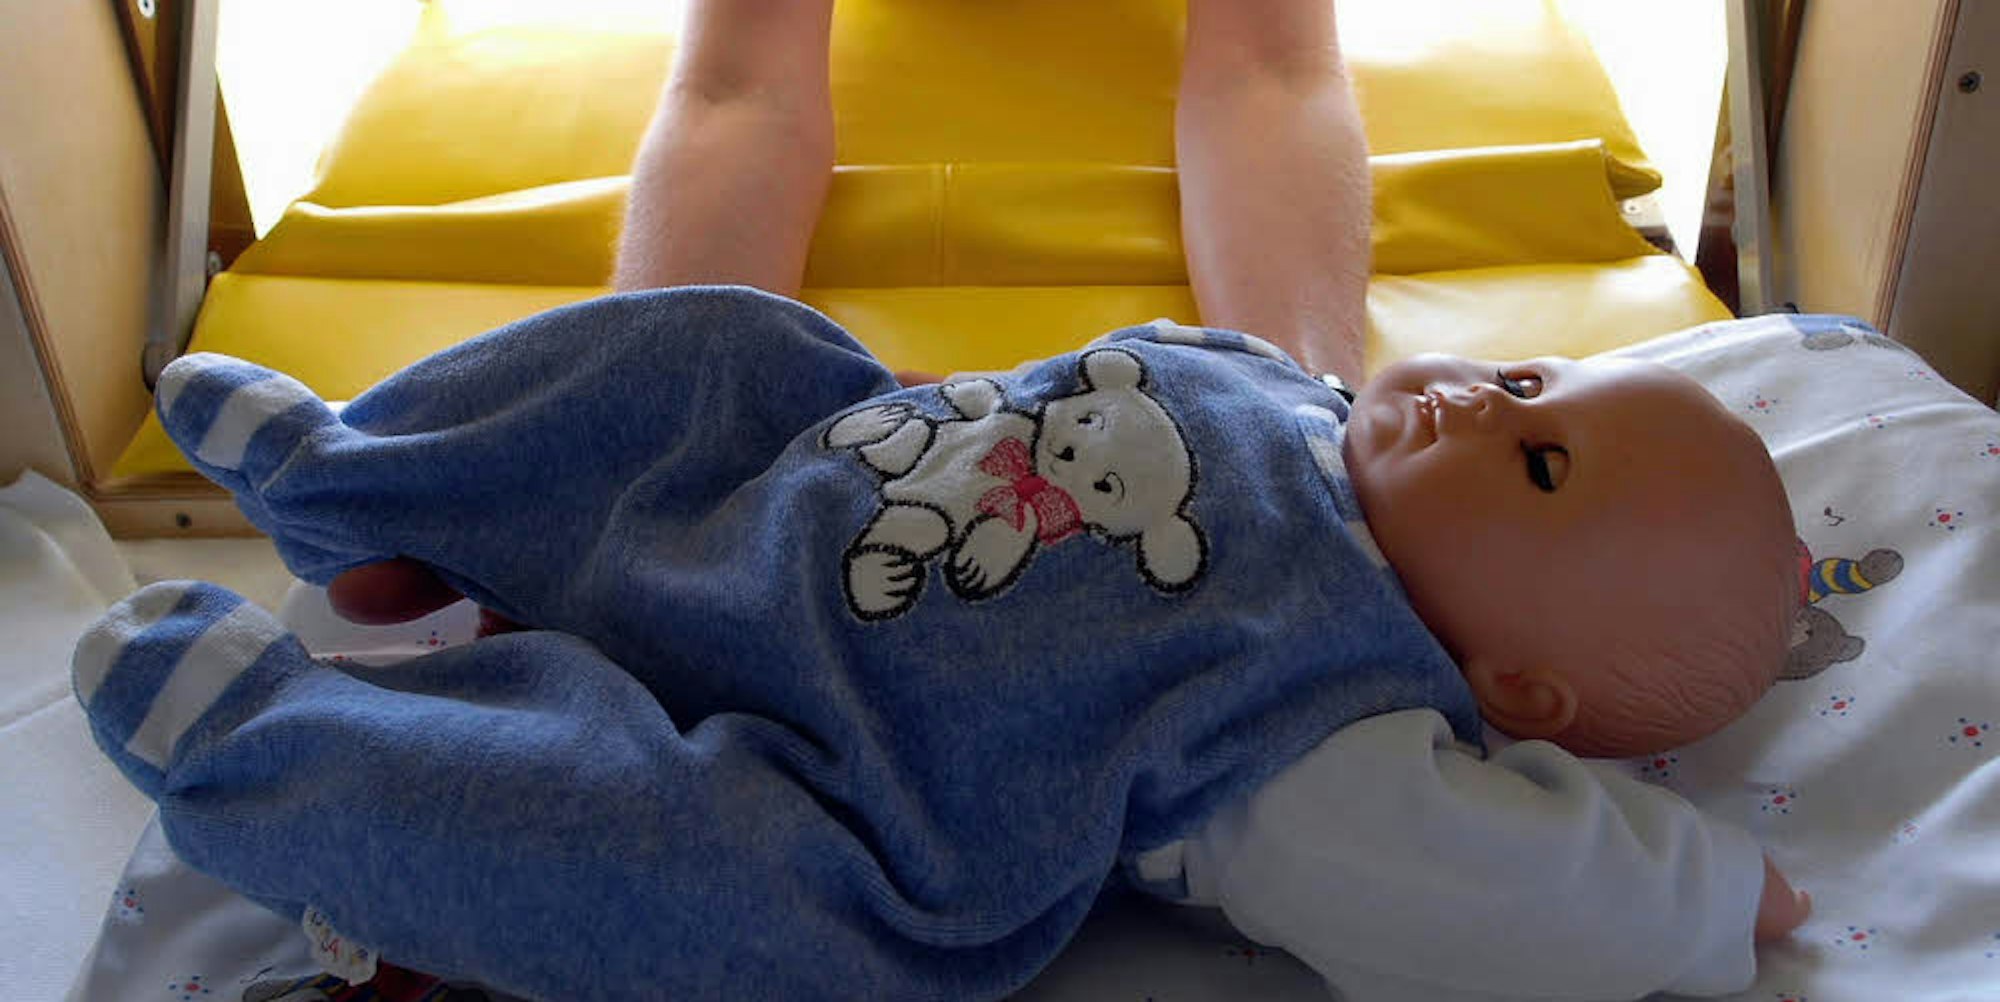 Wie diese Puppe wurde am Donnerstag ein neugeborenes Mädchen in die Babyklappe gelegt.